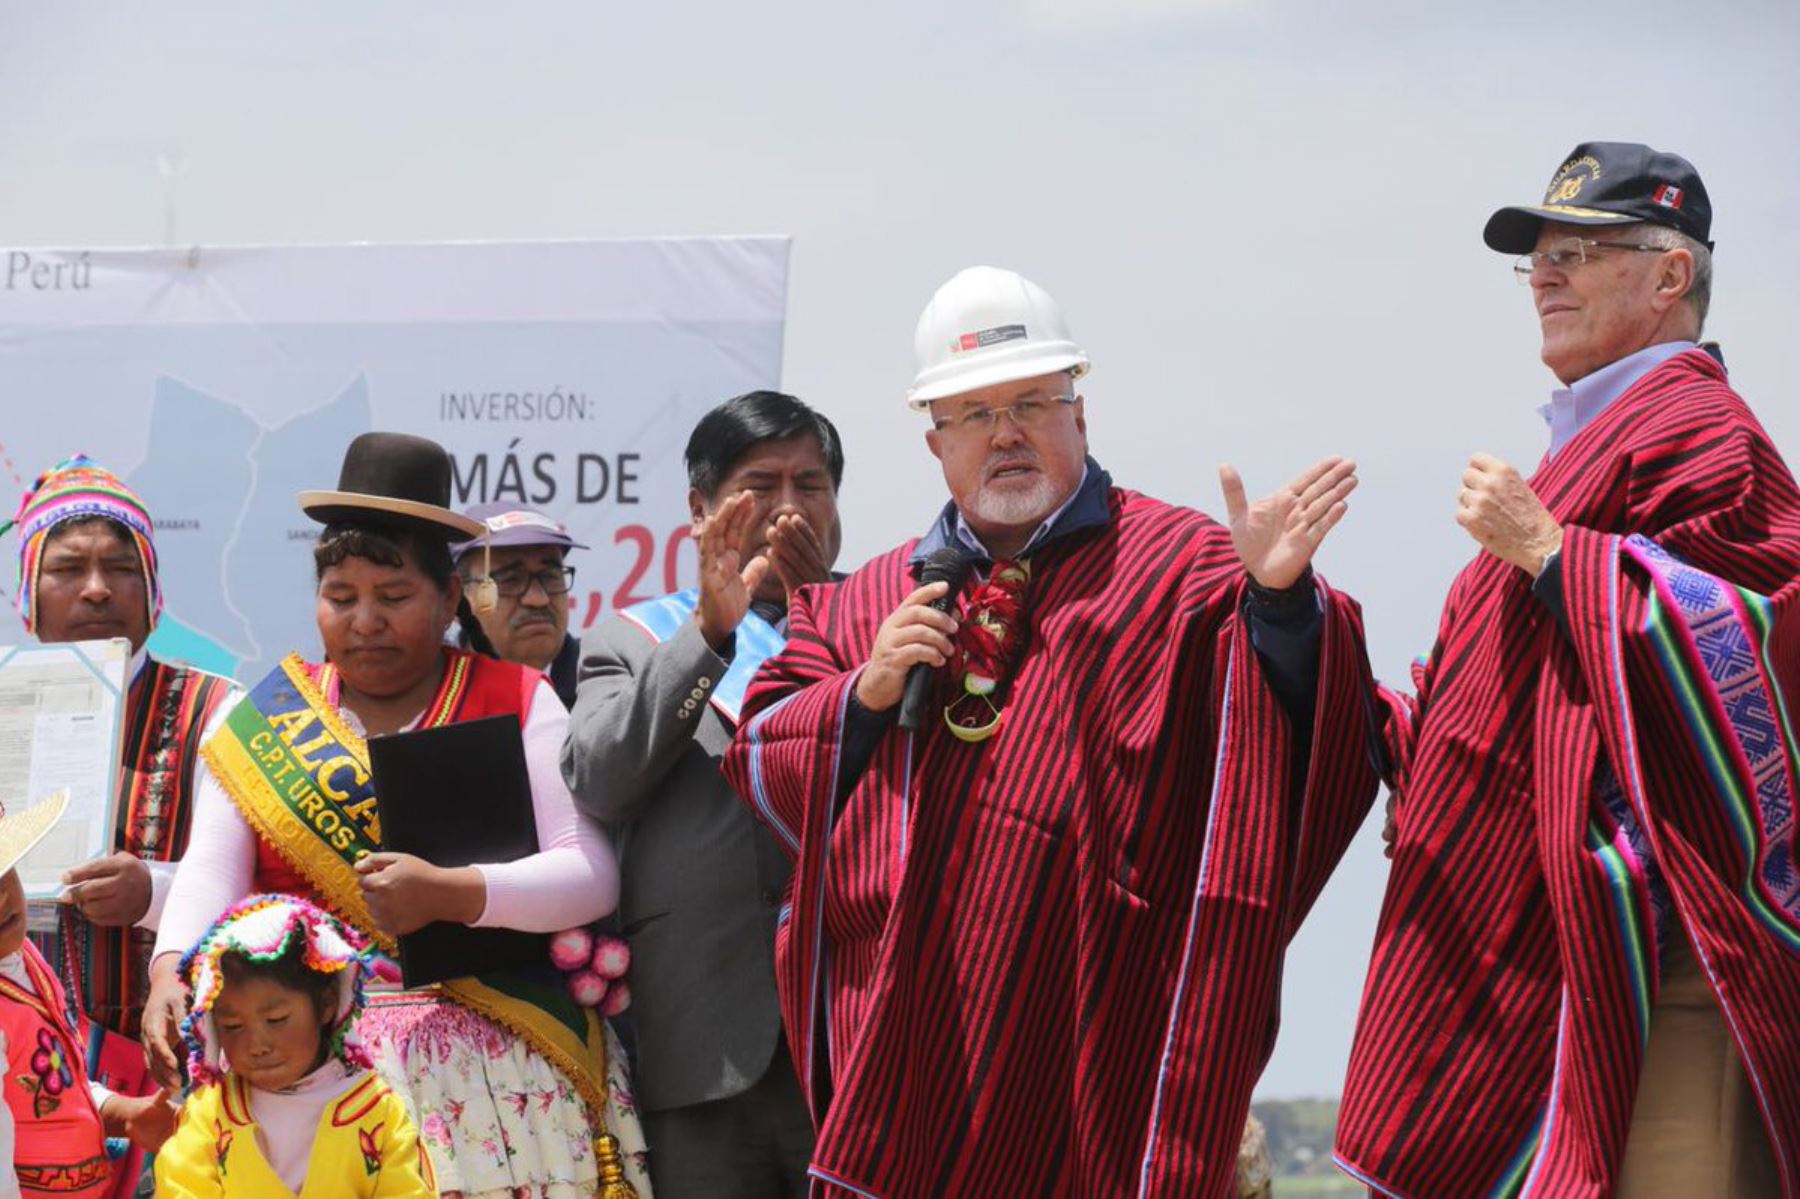 La descontaminación del lago Titicaca constituye una realidad que está en marcha porque este año se construirán cuatro plantas de tratamiento de aguas residuales y durante el 2019 se hará lo propio con otras seis plantas, aseveró hoy el ministro de Vivienda, Construcción y Saneamiento, Carlos Bruce.